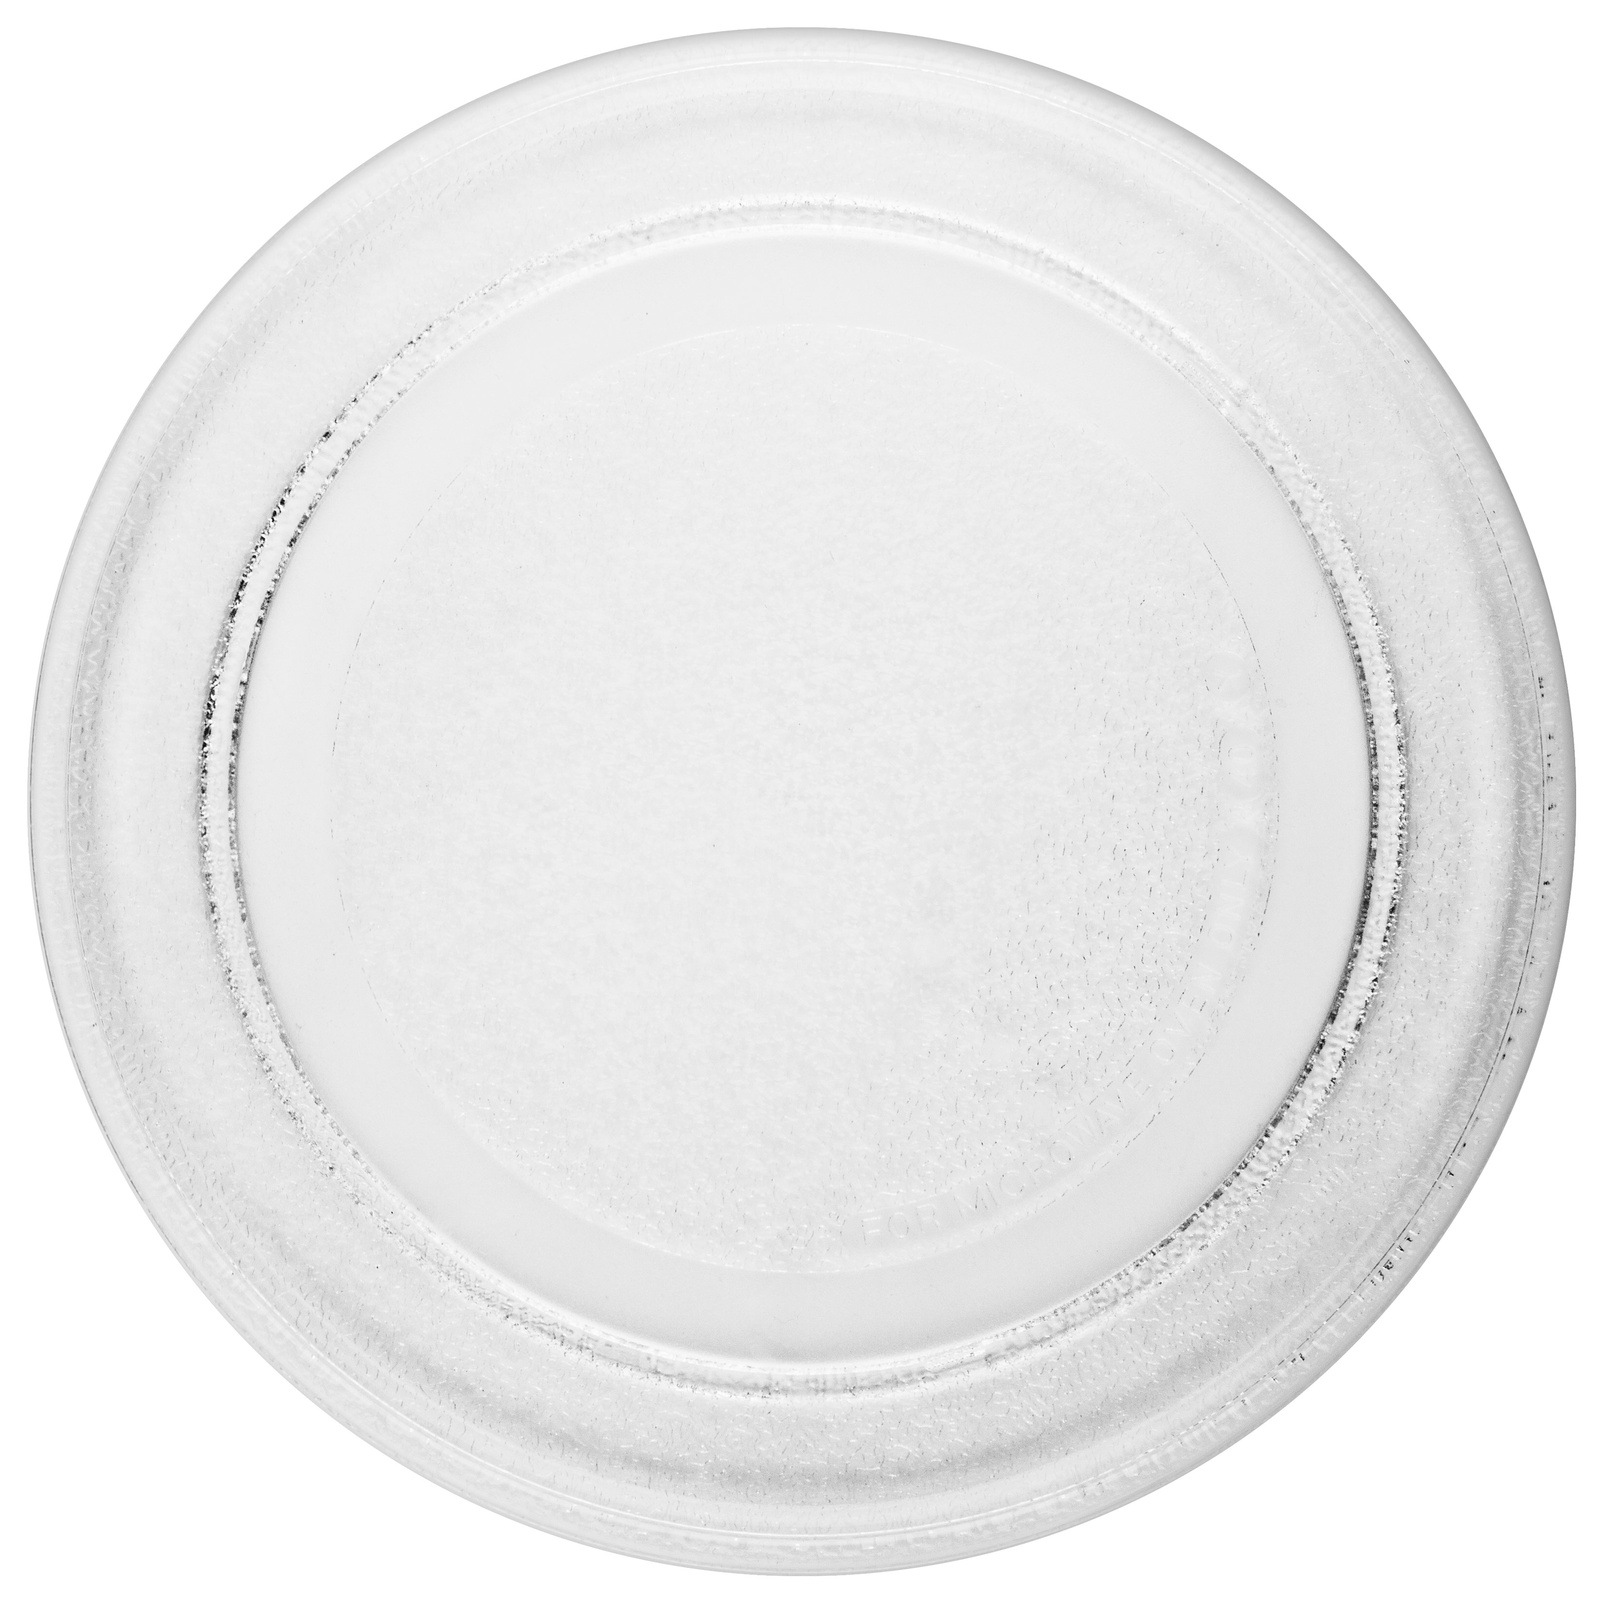 фото ONKRON тарелка для микроволновой печи (СВЧ печи) LG (245 мм, без куплера), прозрачная 3390W1A035A